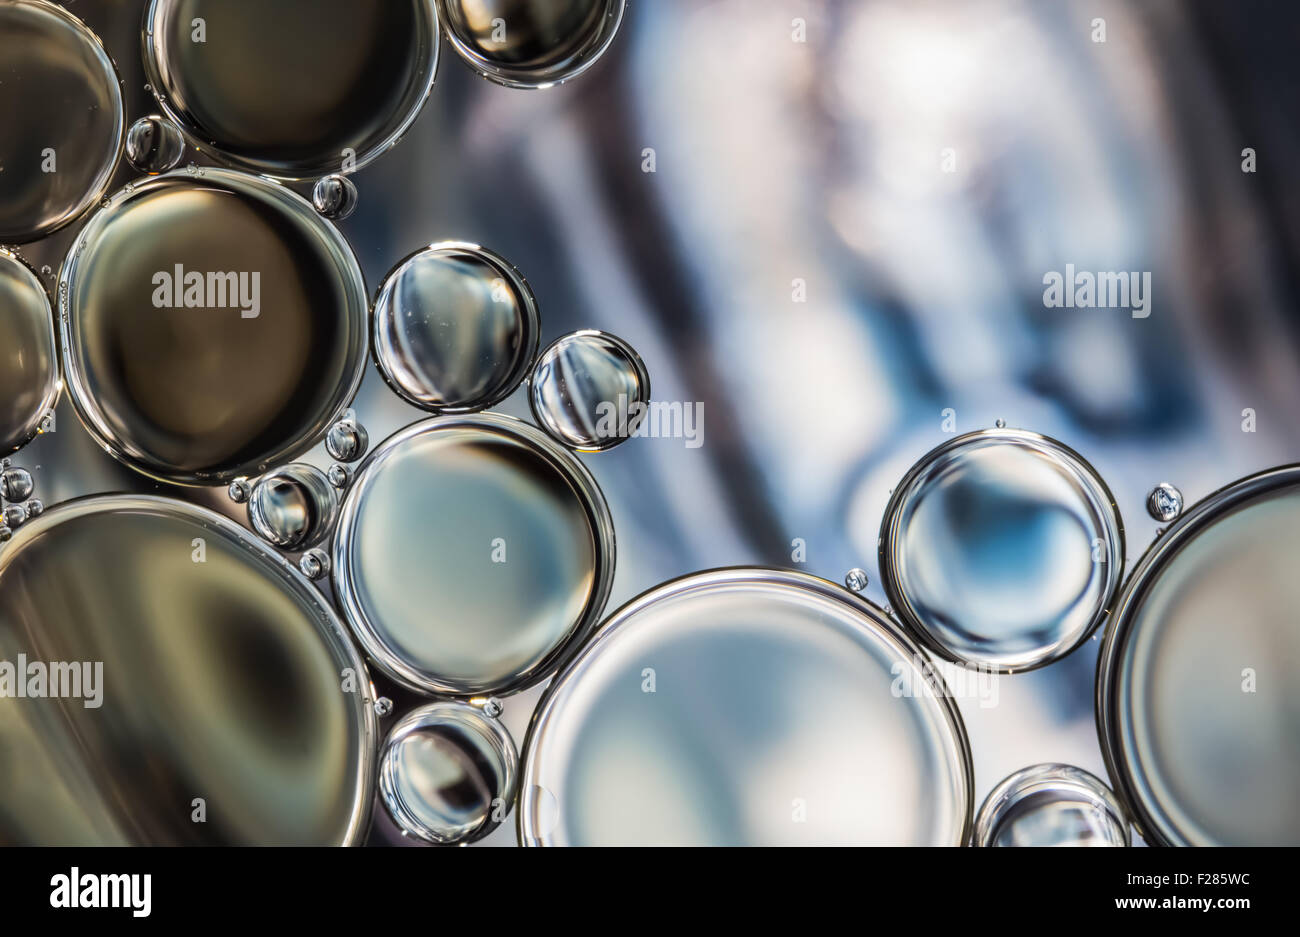 water bubbles abstract light illumination Stock Photo